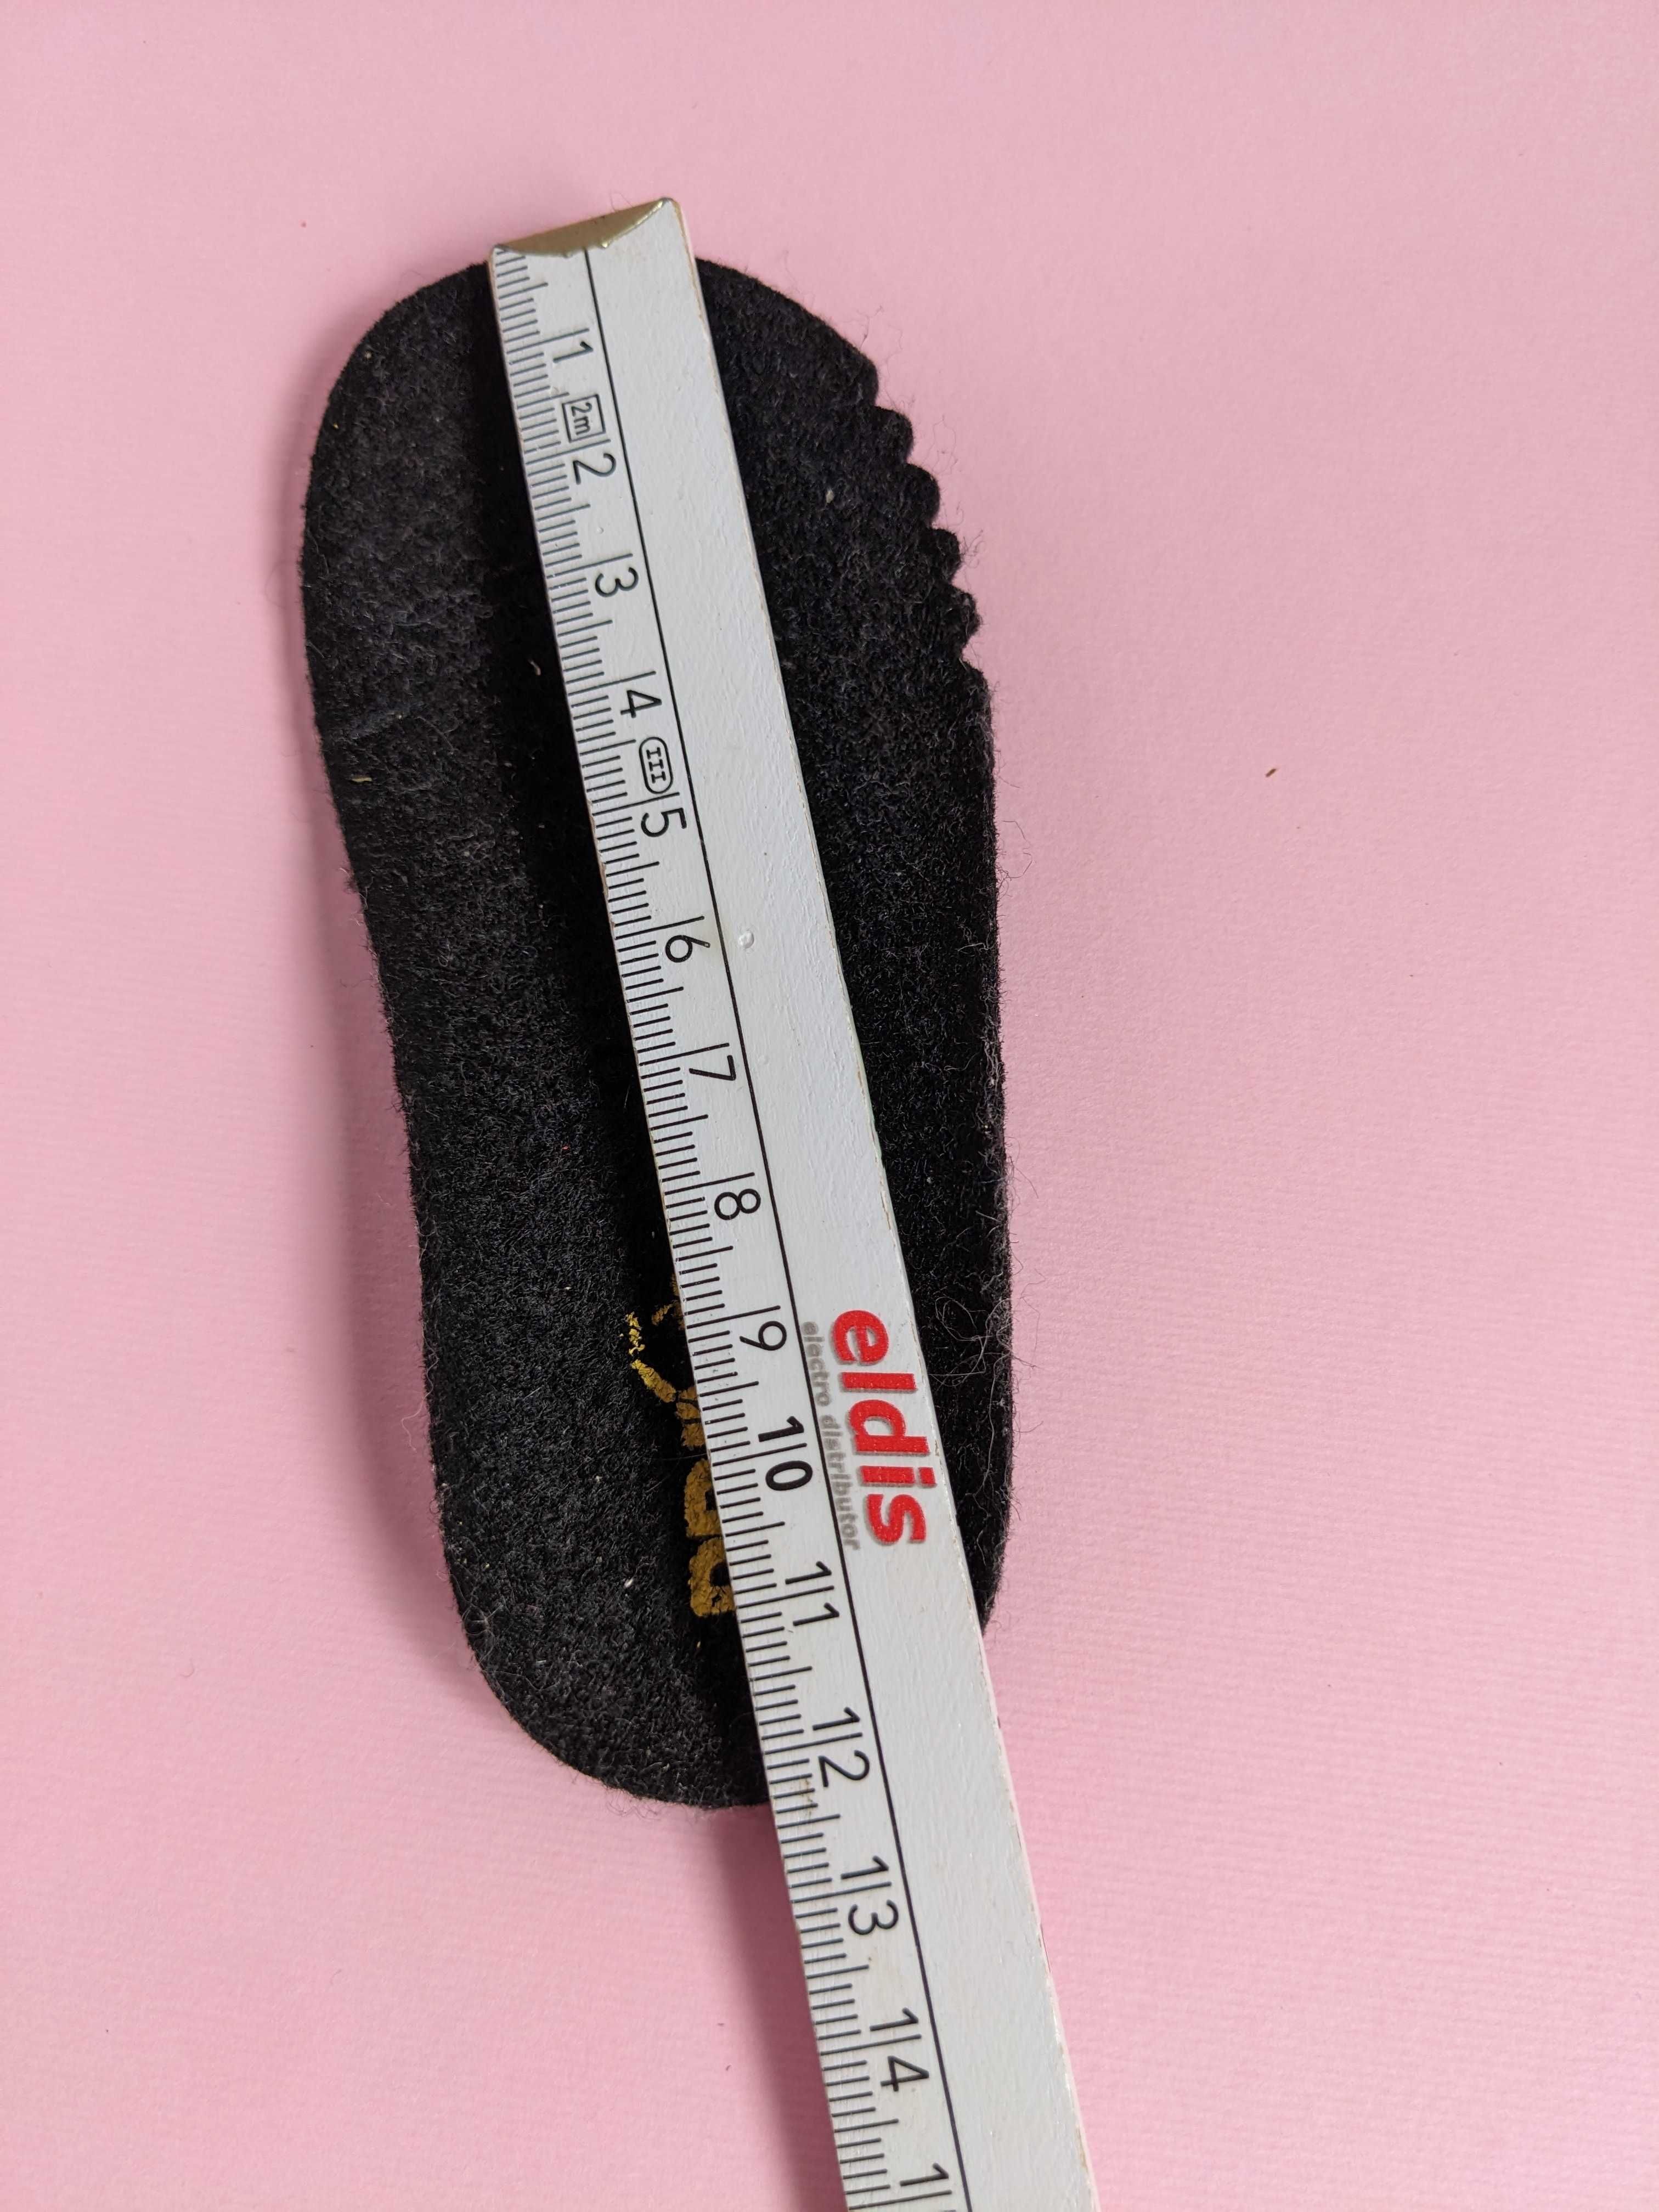 Зимові чобітки для дівчинки, бренд Primigi, 19 розмір, стан ідеальний